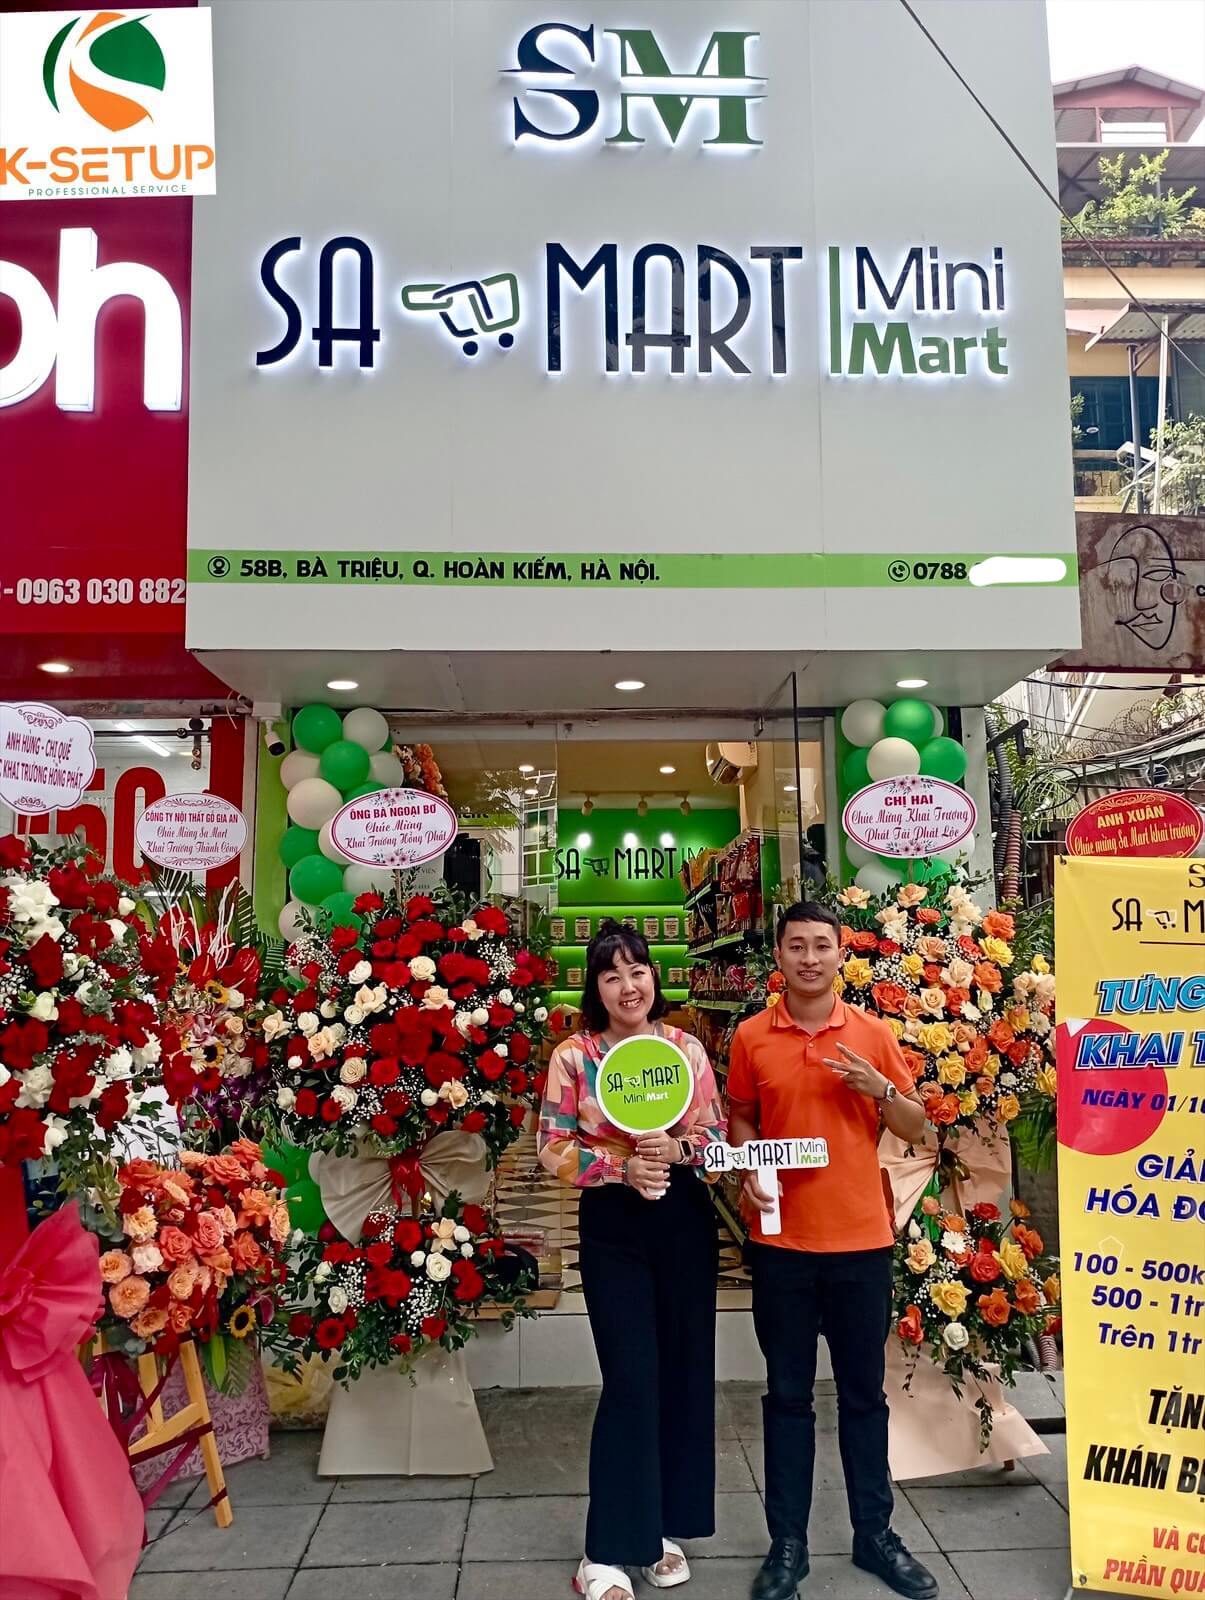 Chúc mừng khai trương siêu thị Sa Mart Hà Nội - Công ty thiết kế setup siêu thị K-setup